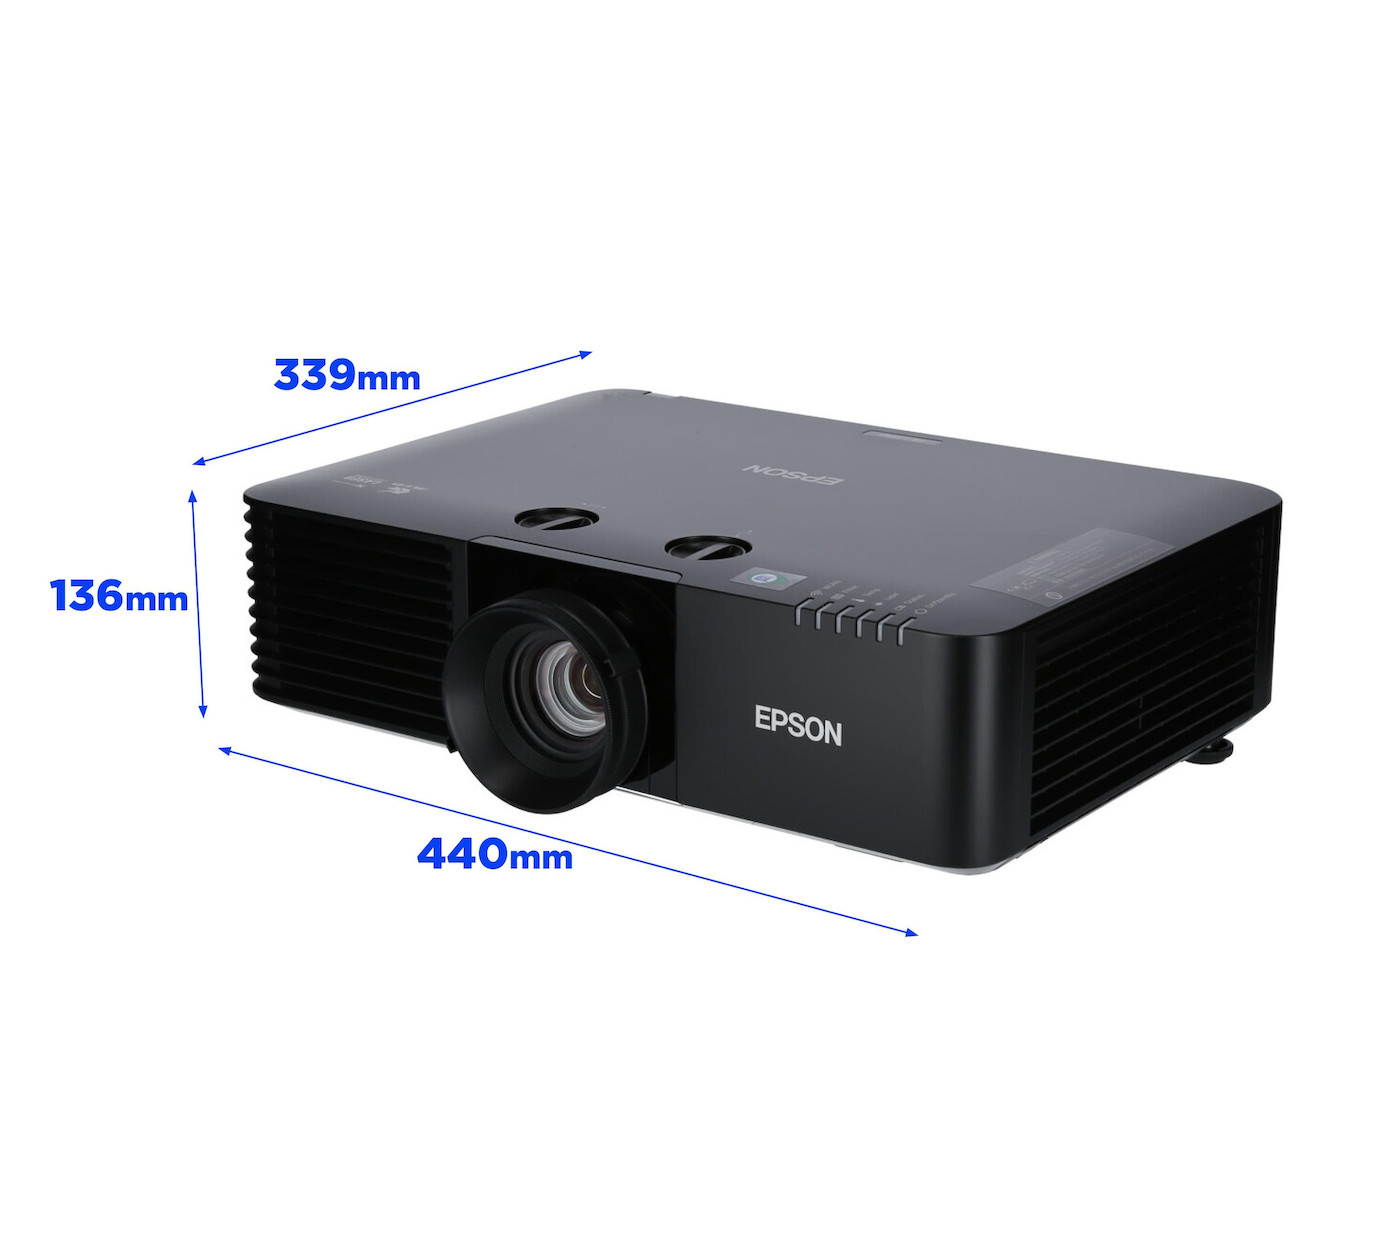 Vorschau: Epson EB-L735U schwarz Laser-Beamer mit 7000 ANSI-Lumen und WUXGA Auflösung - Demo